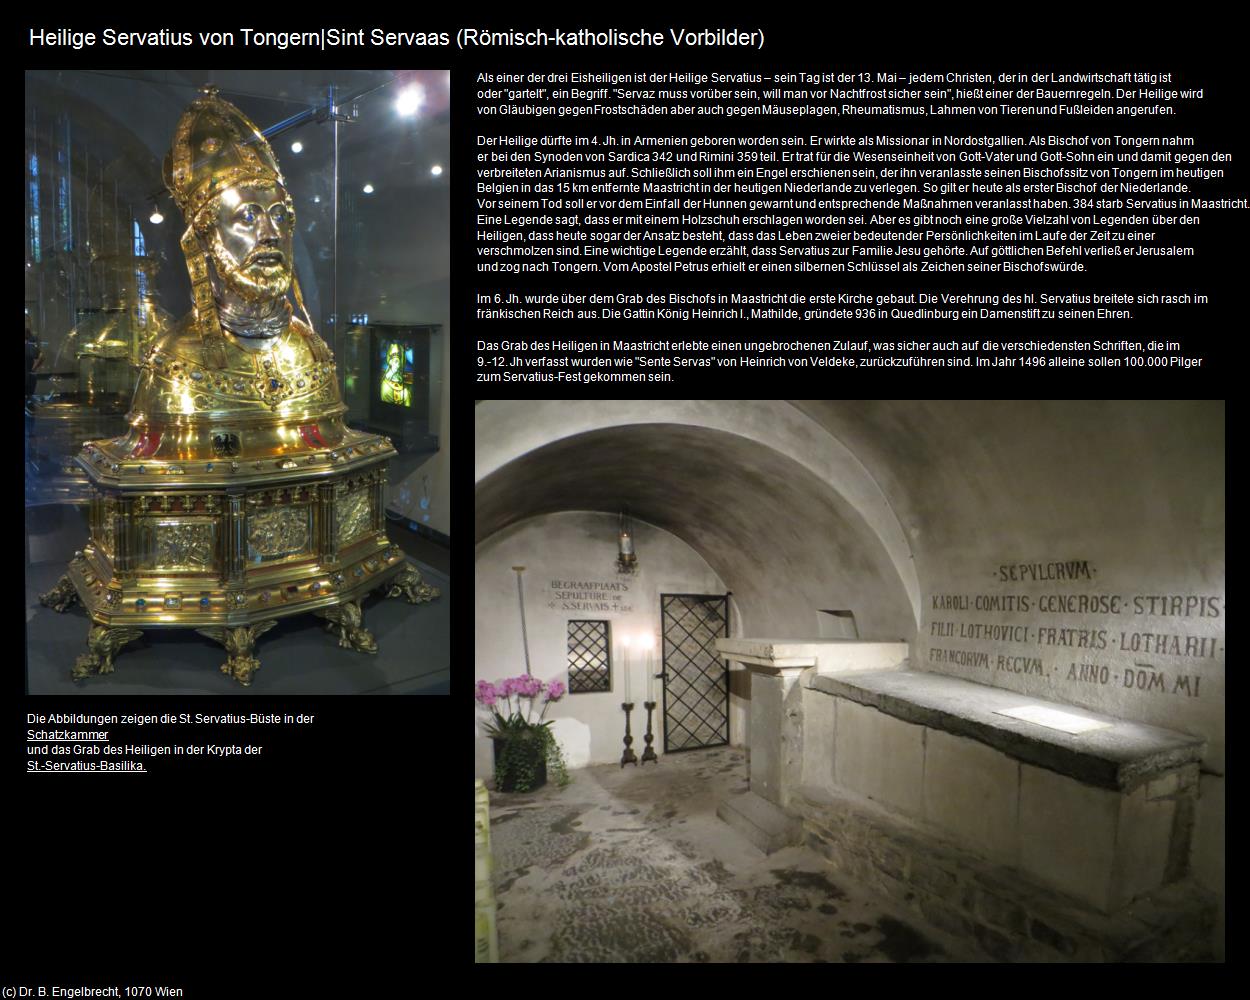 Heilige Servatius|Sint Servaas (Maastricht) in Kulturatlas-NIEDERLANDE(c)B.Engelbrecht